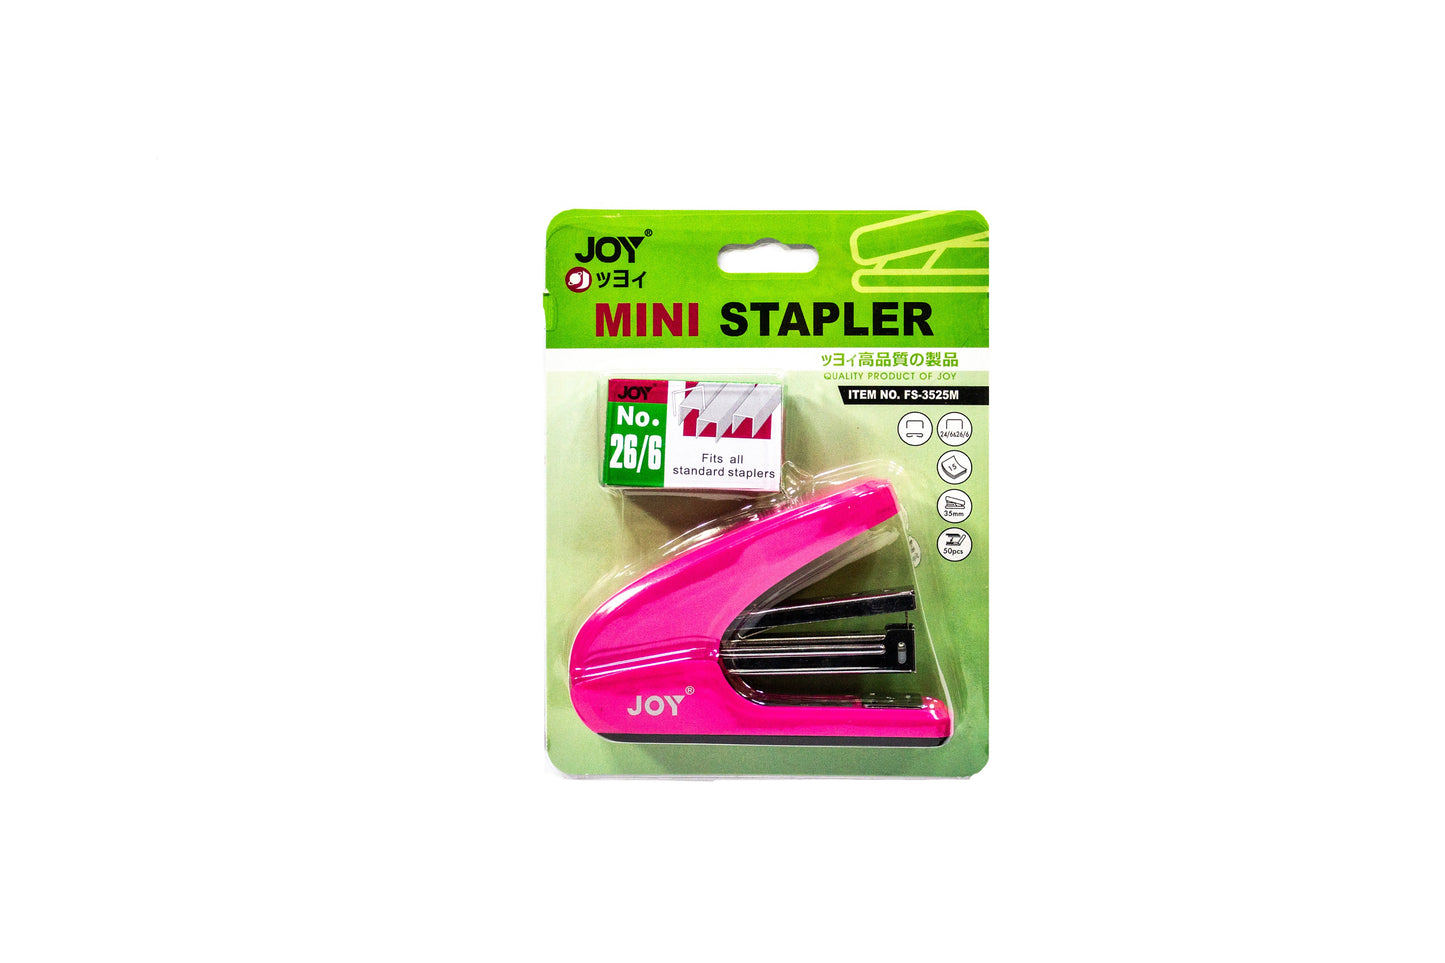 Joy Stapler With Staple Wire Set FS-3525M